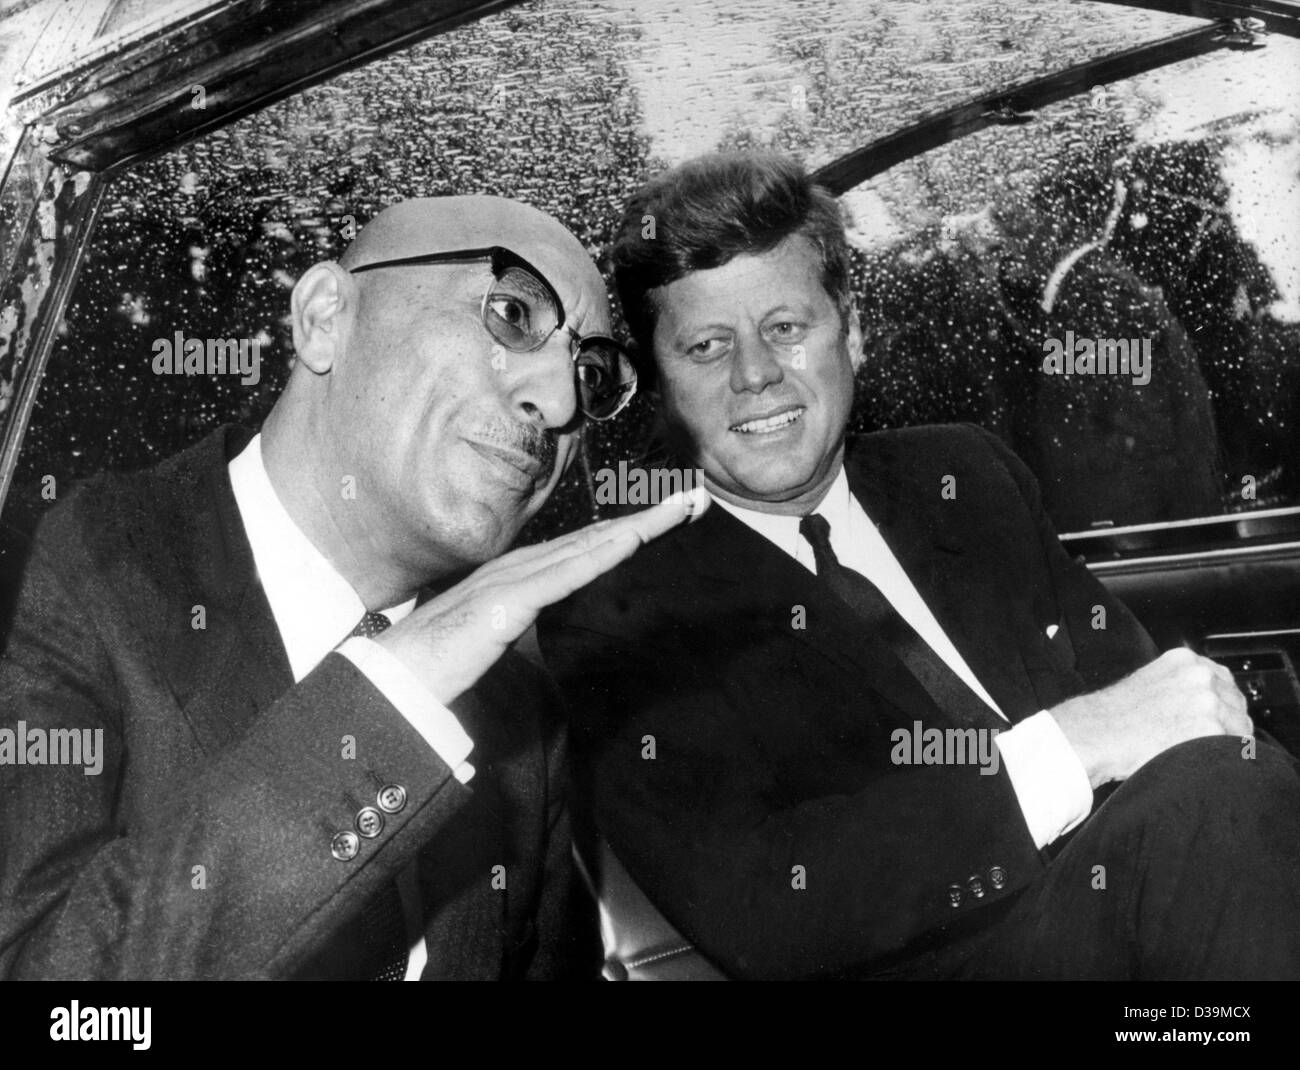 (Afp) - Le président américain John F. Kennedy (R) avec son invité, le roi Mohammed Zaher Shah (L) dans une limousine après l'arrivée du Shah à Washington, D.C. le 6 septembre 1963. Zahir Shah devint Roi d'Afghanistan à l'âge de 19 ans après la mort de son père en un assassinat en 1933. Le 17 juillet 1973 Le Roi Banque D'Images